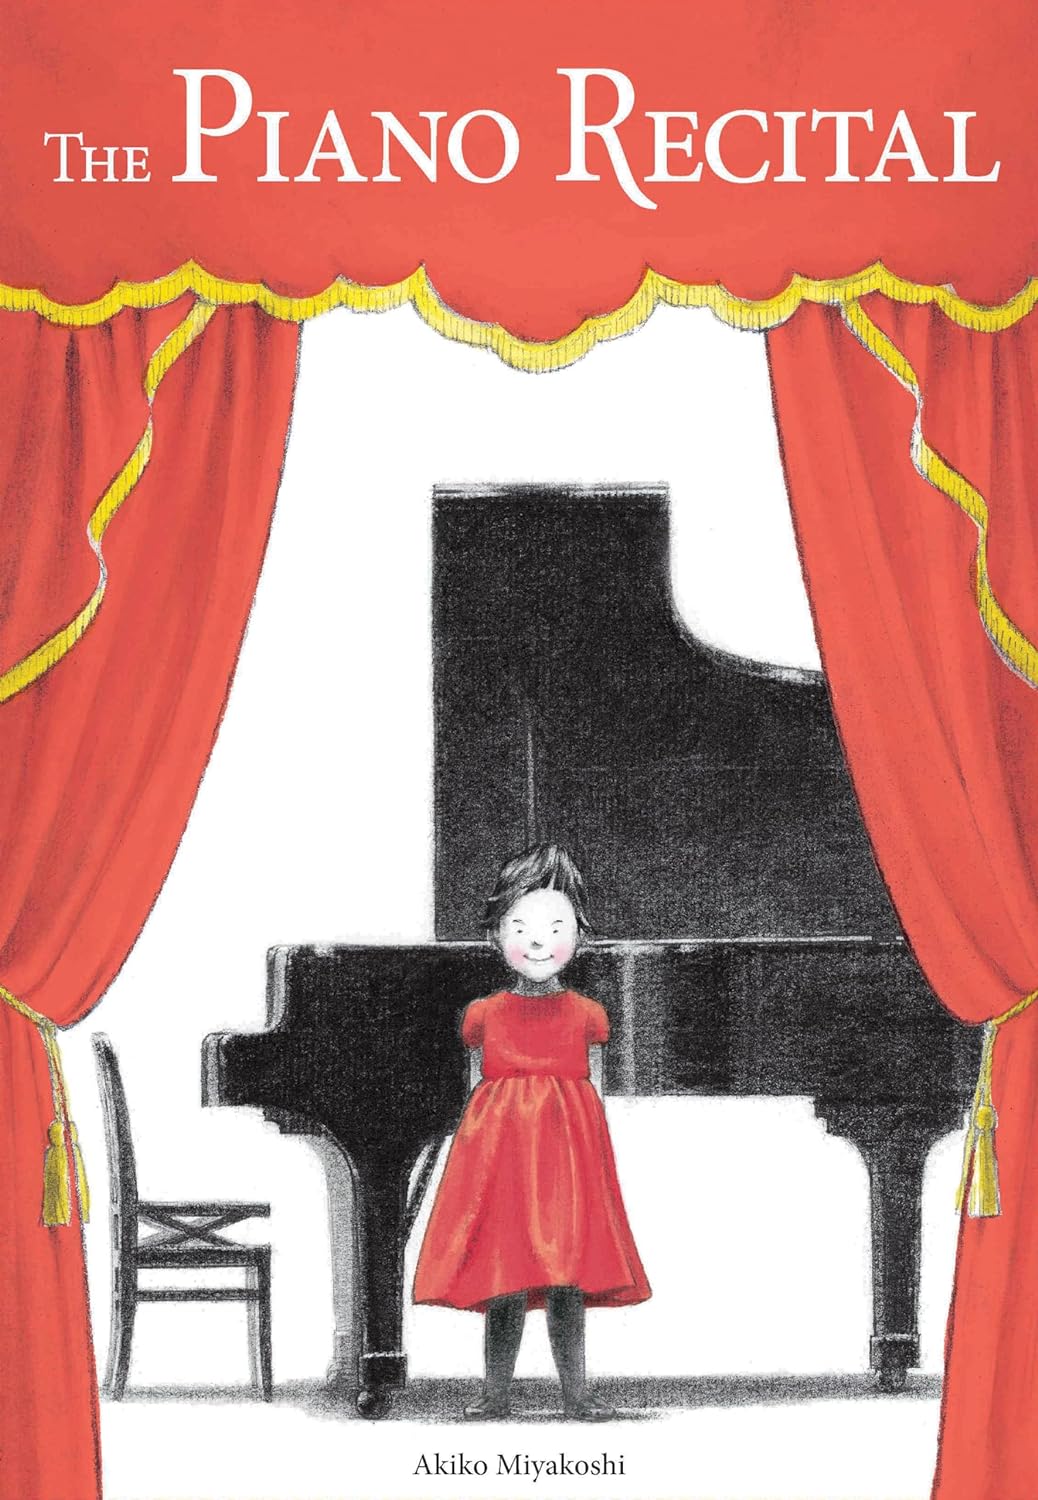 The Piano Recital Asian American children's book